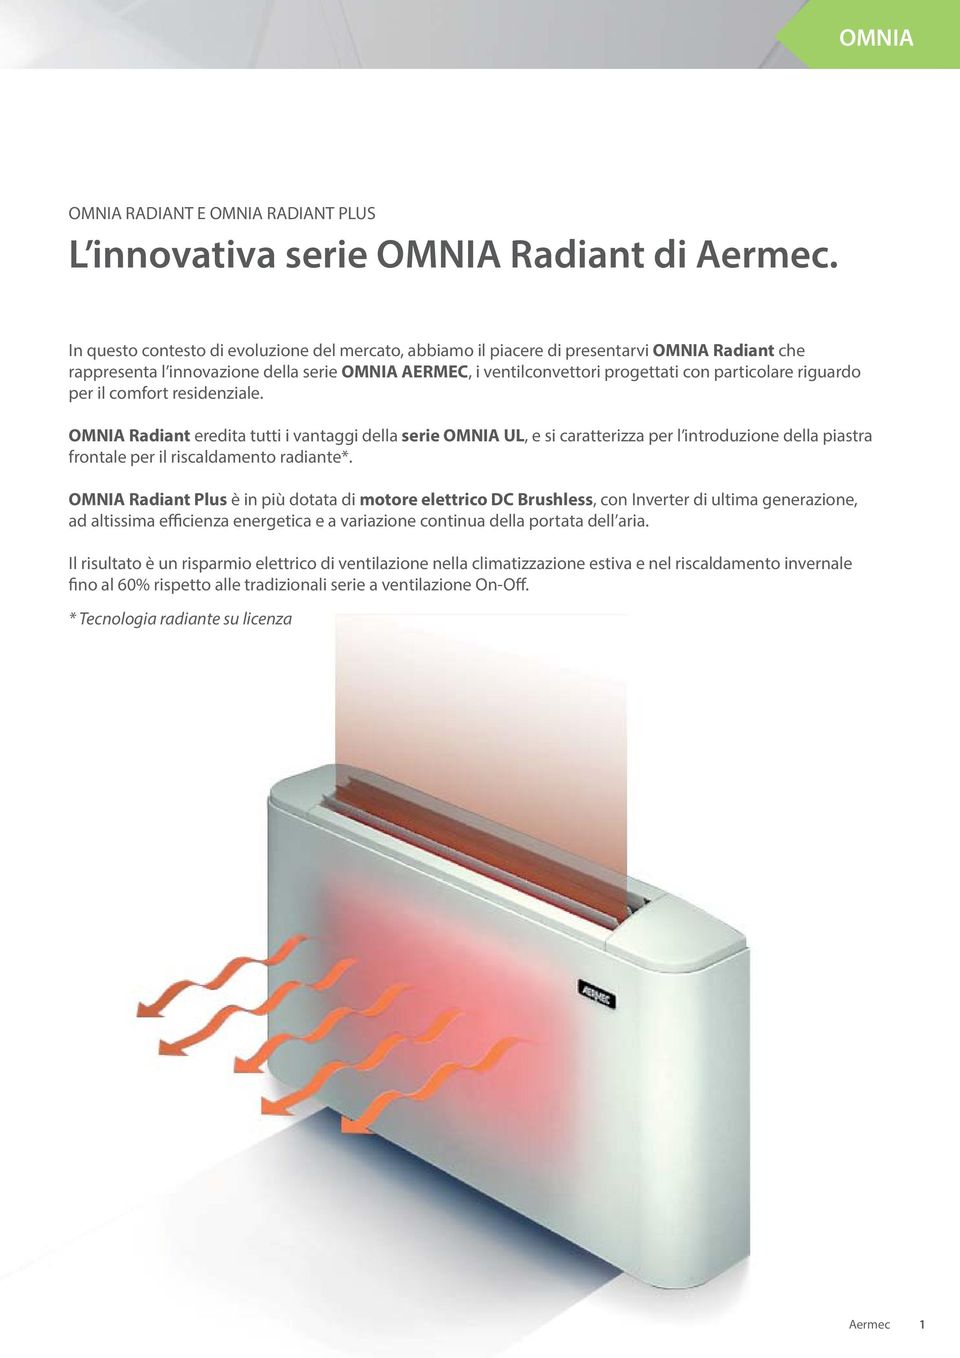 riguardo per il comfort residenziale. OMNIA Radiant eredita tutti i vantaggi della serie OMNIA UL, e si caratterizza per l introduzione della piastra frontale per il riscaldamento radiante*.